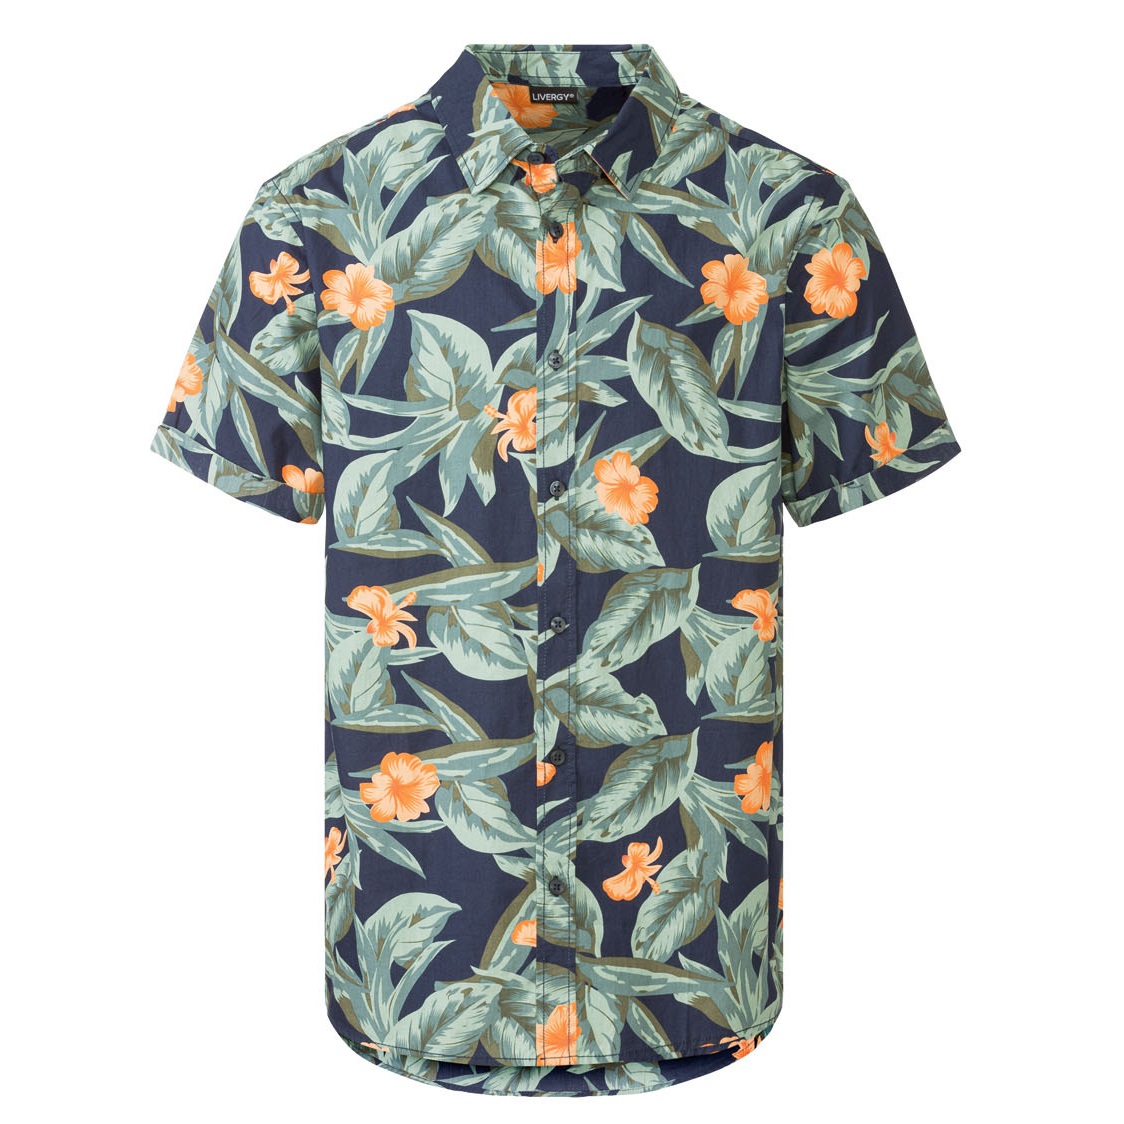 نکته خرید - قیمت روز پیراهن آستین کوتاه مردانه لیورجی مدل هاوایی کد Cuba Flower خرید